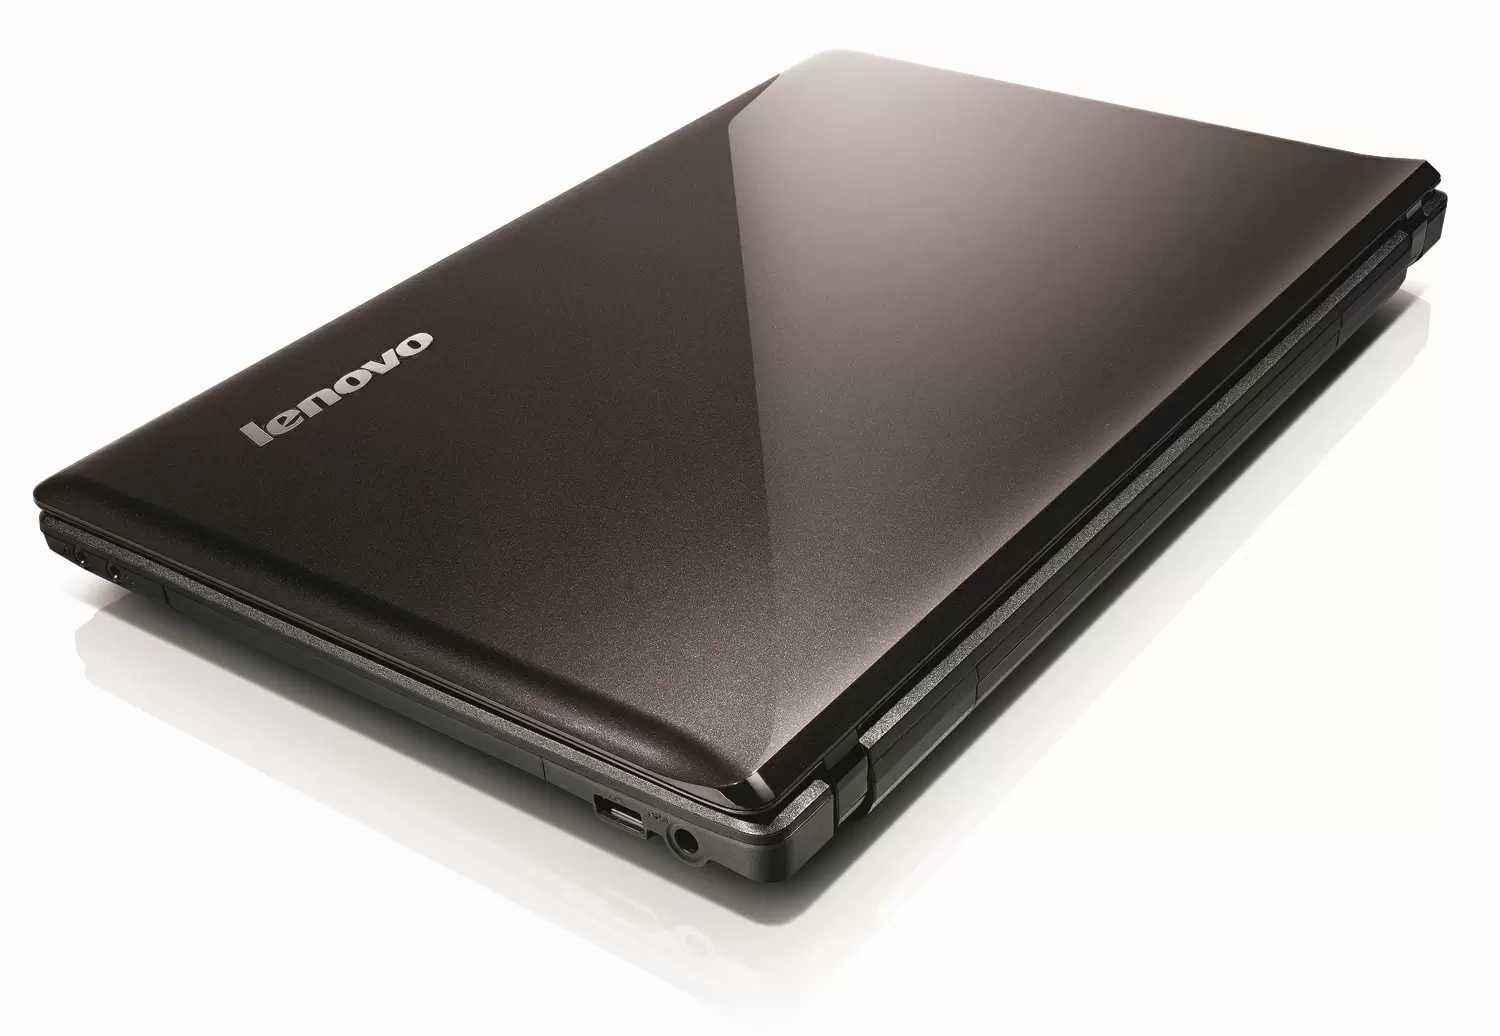 Videos for Lenovo Essential G570 ( B940 )